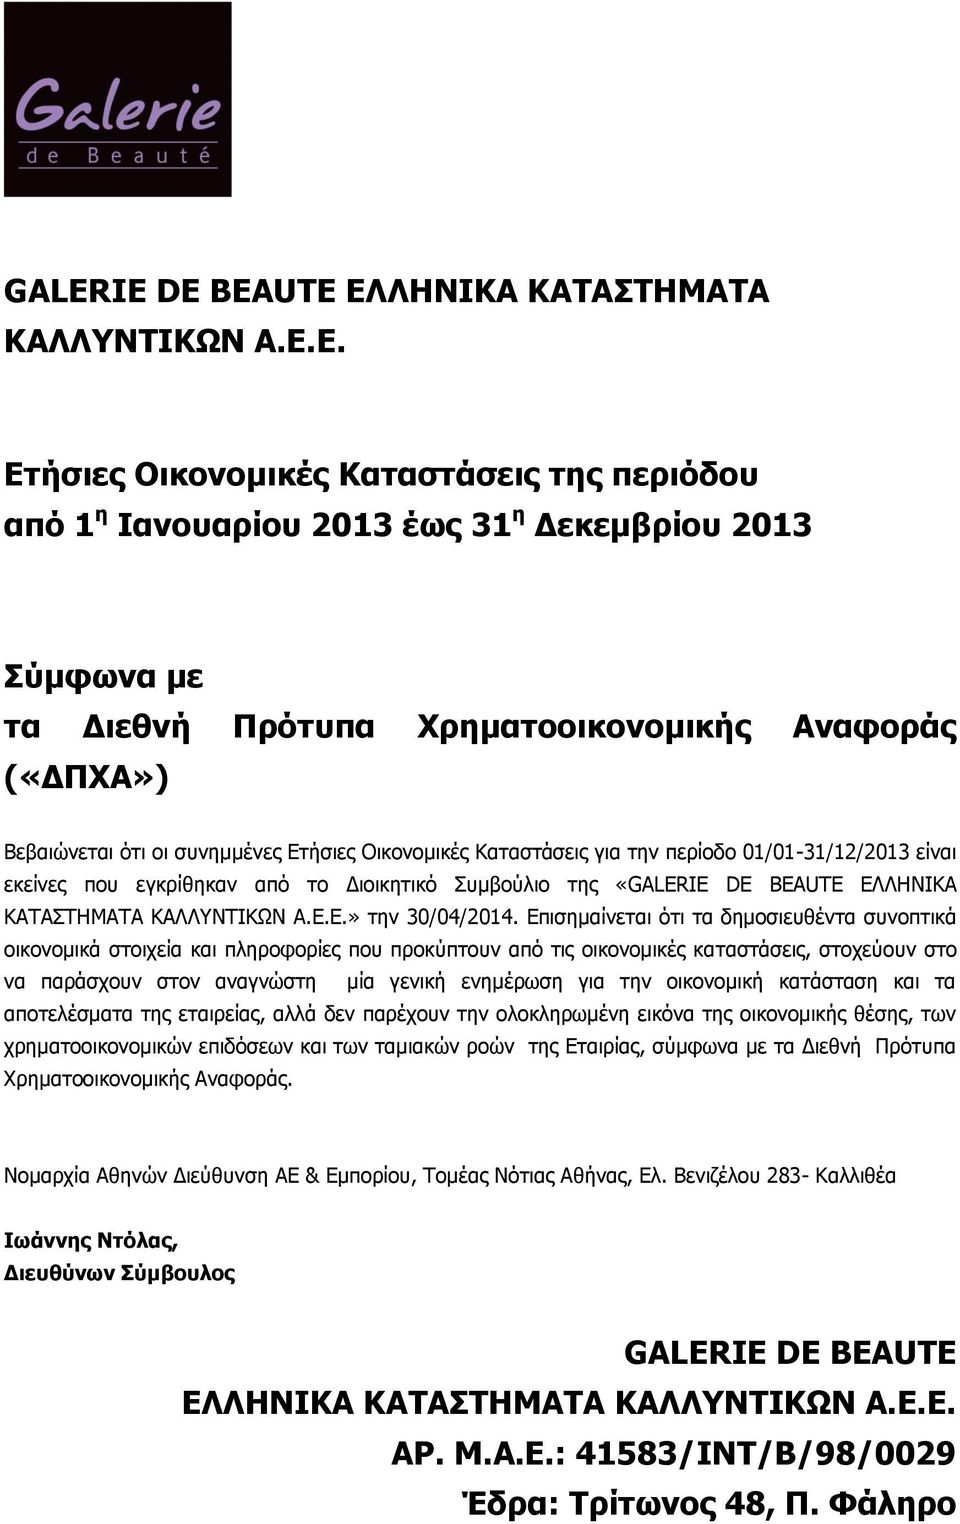 Ετήσιες Οικονομικές Καταστάσεις για την περίοδο 01/01-31/12/2013 είναι εκείνες που εγκρίθηκαν από το Διοικητικό Συμβούλιο της «Ε.» την 30/04/2014.